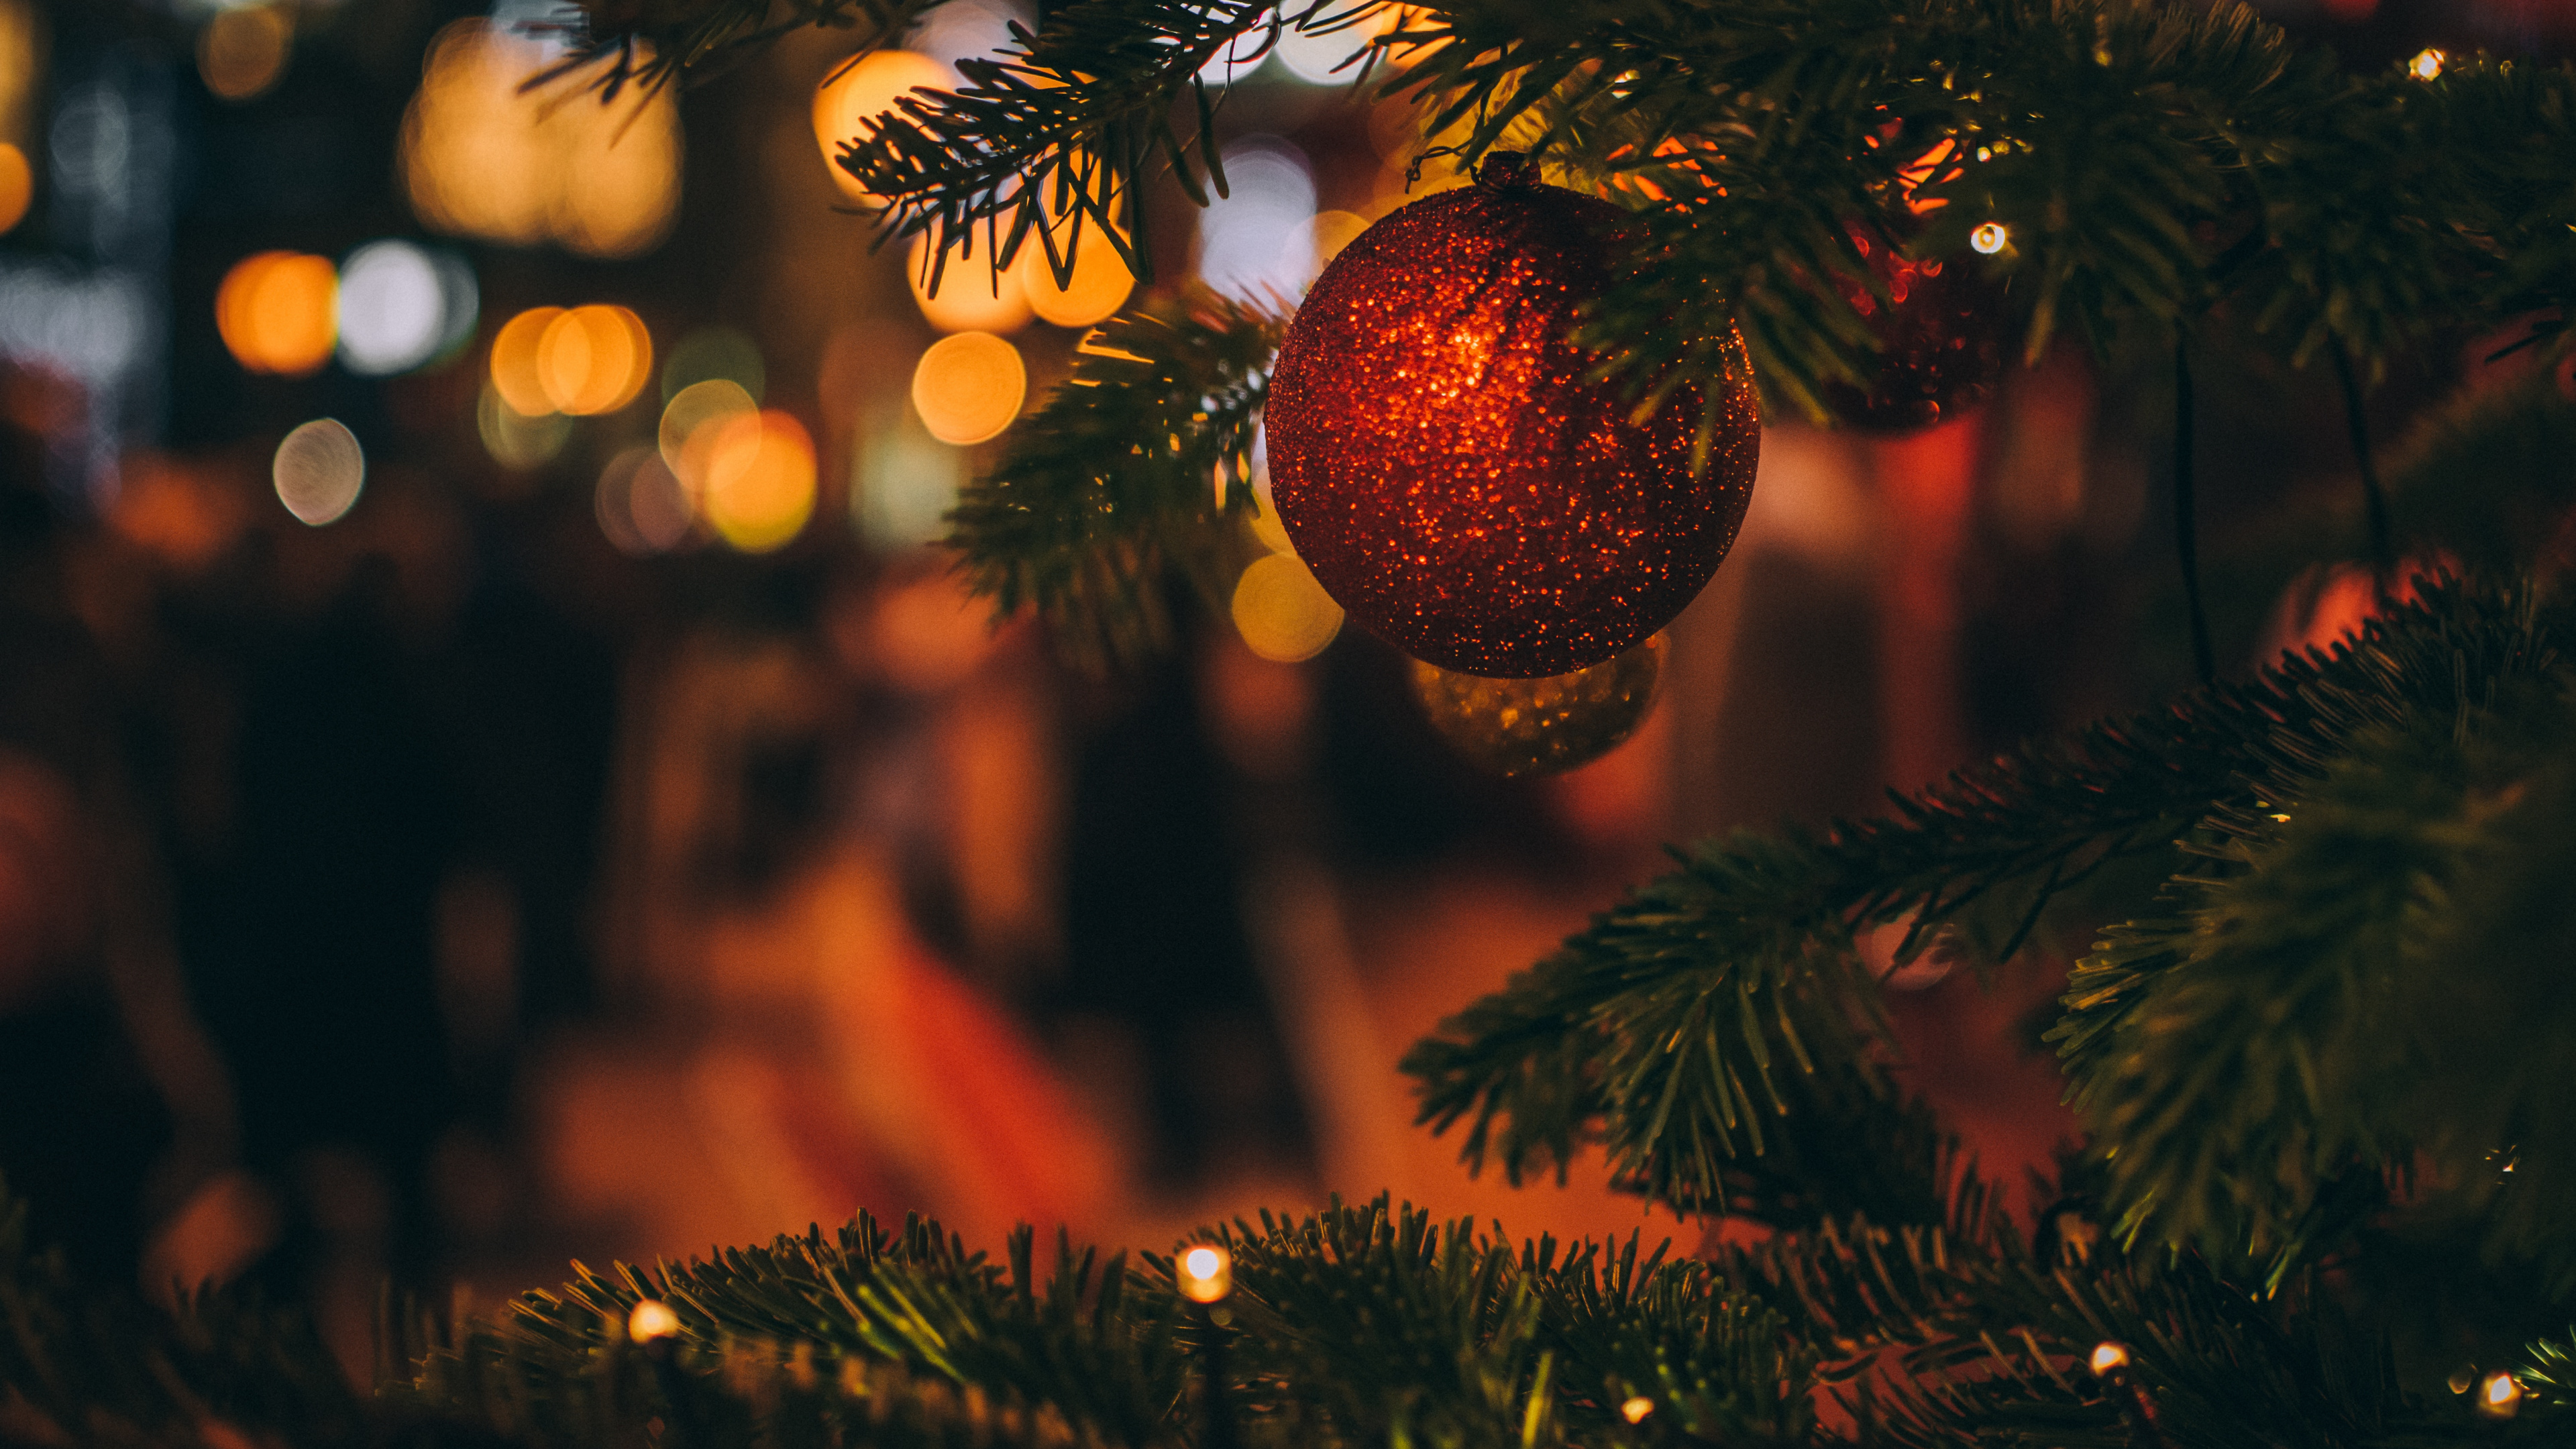 Weihnachten, Weihnachtsbaum, Baum, Christmas Ornament, Fichte. Wallpaper in 3840x2160 Resolution